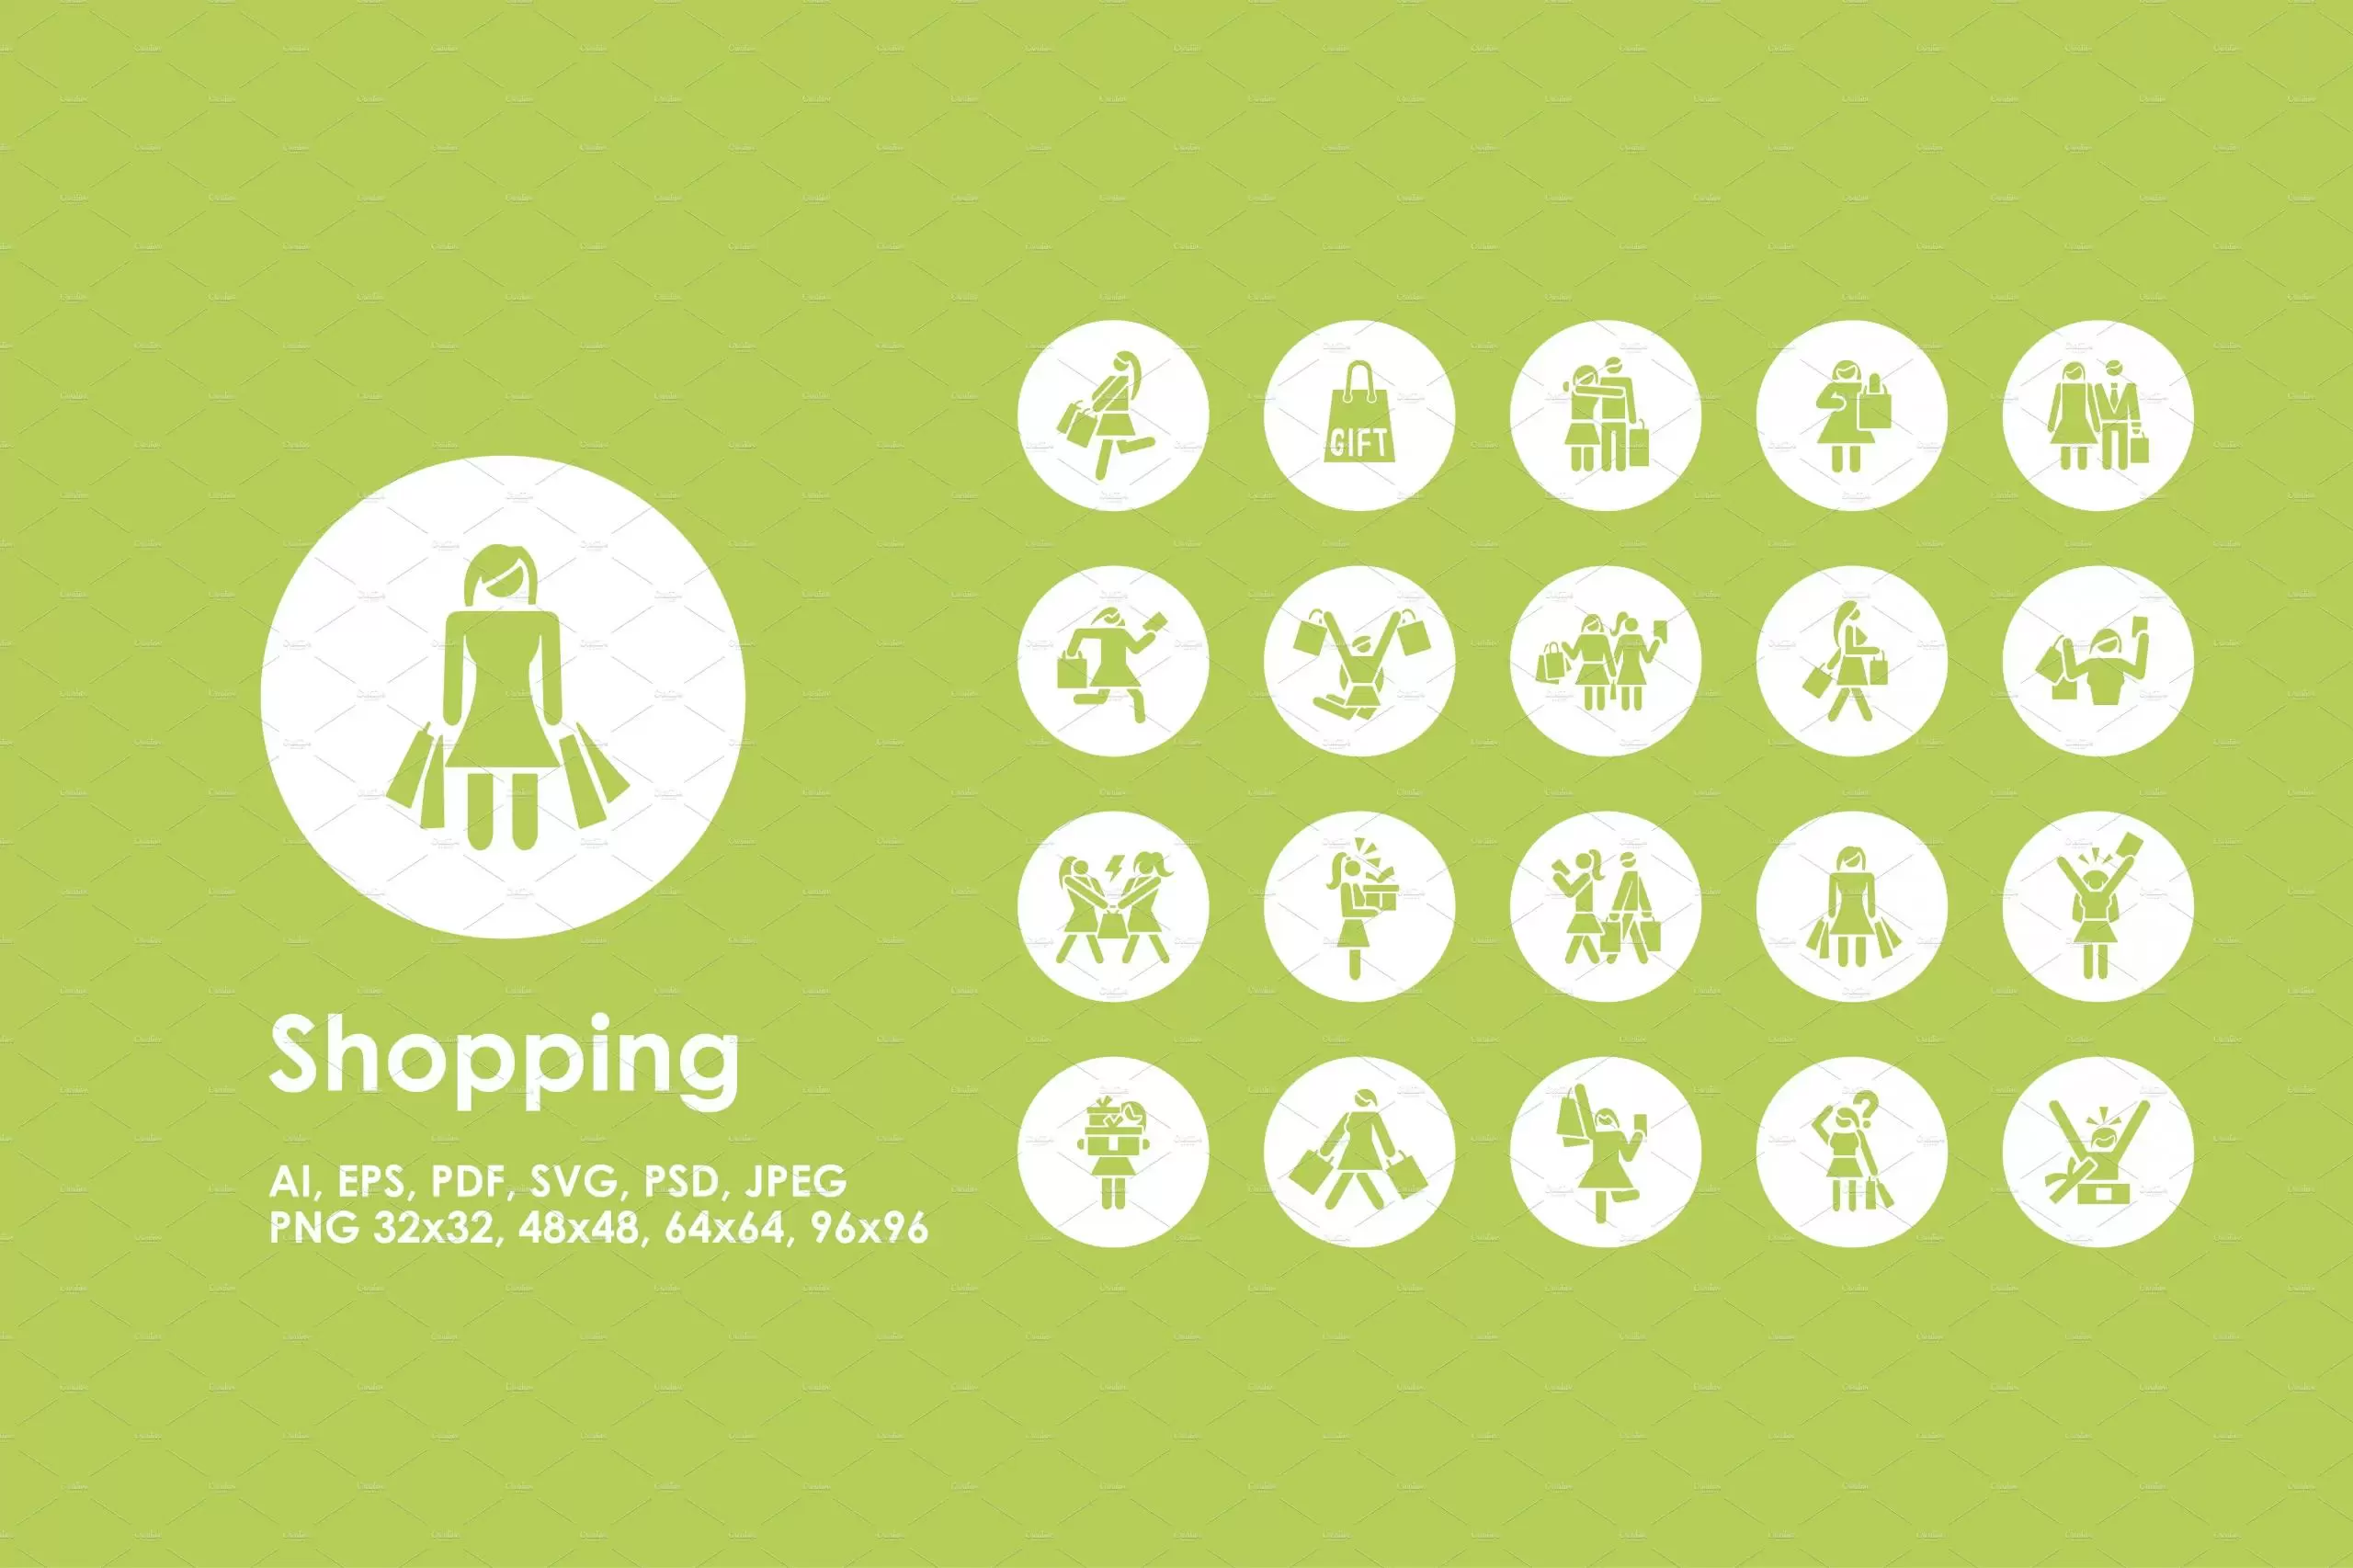 购物图标素材 Shopping simple icons插图